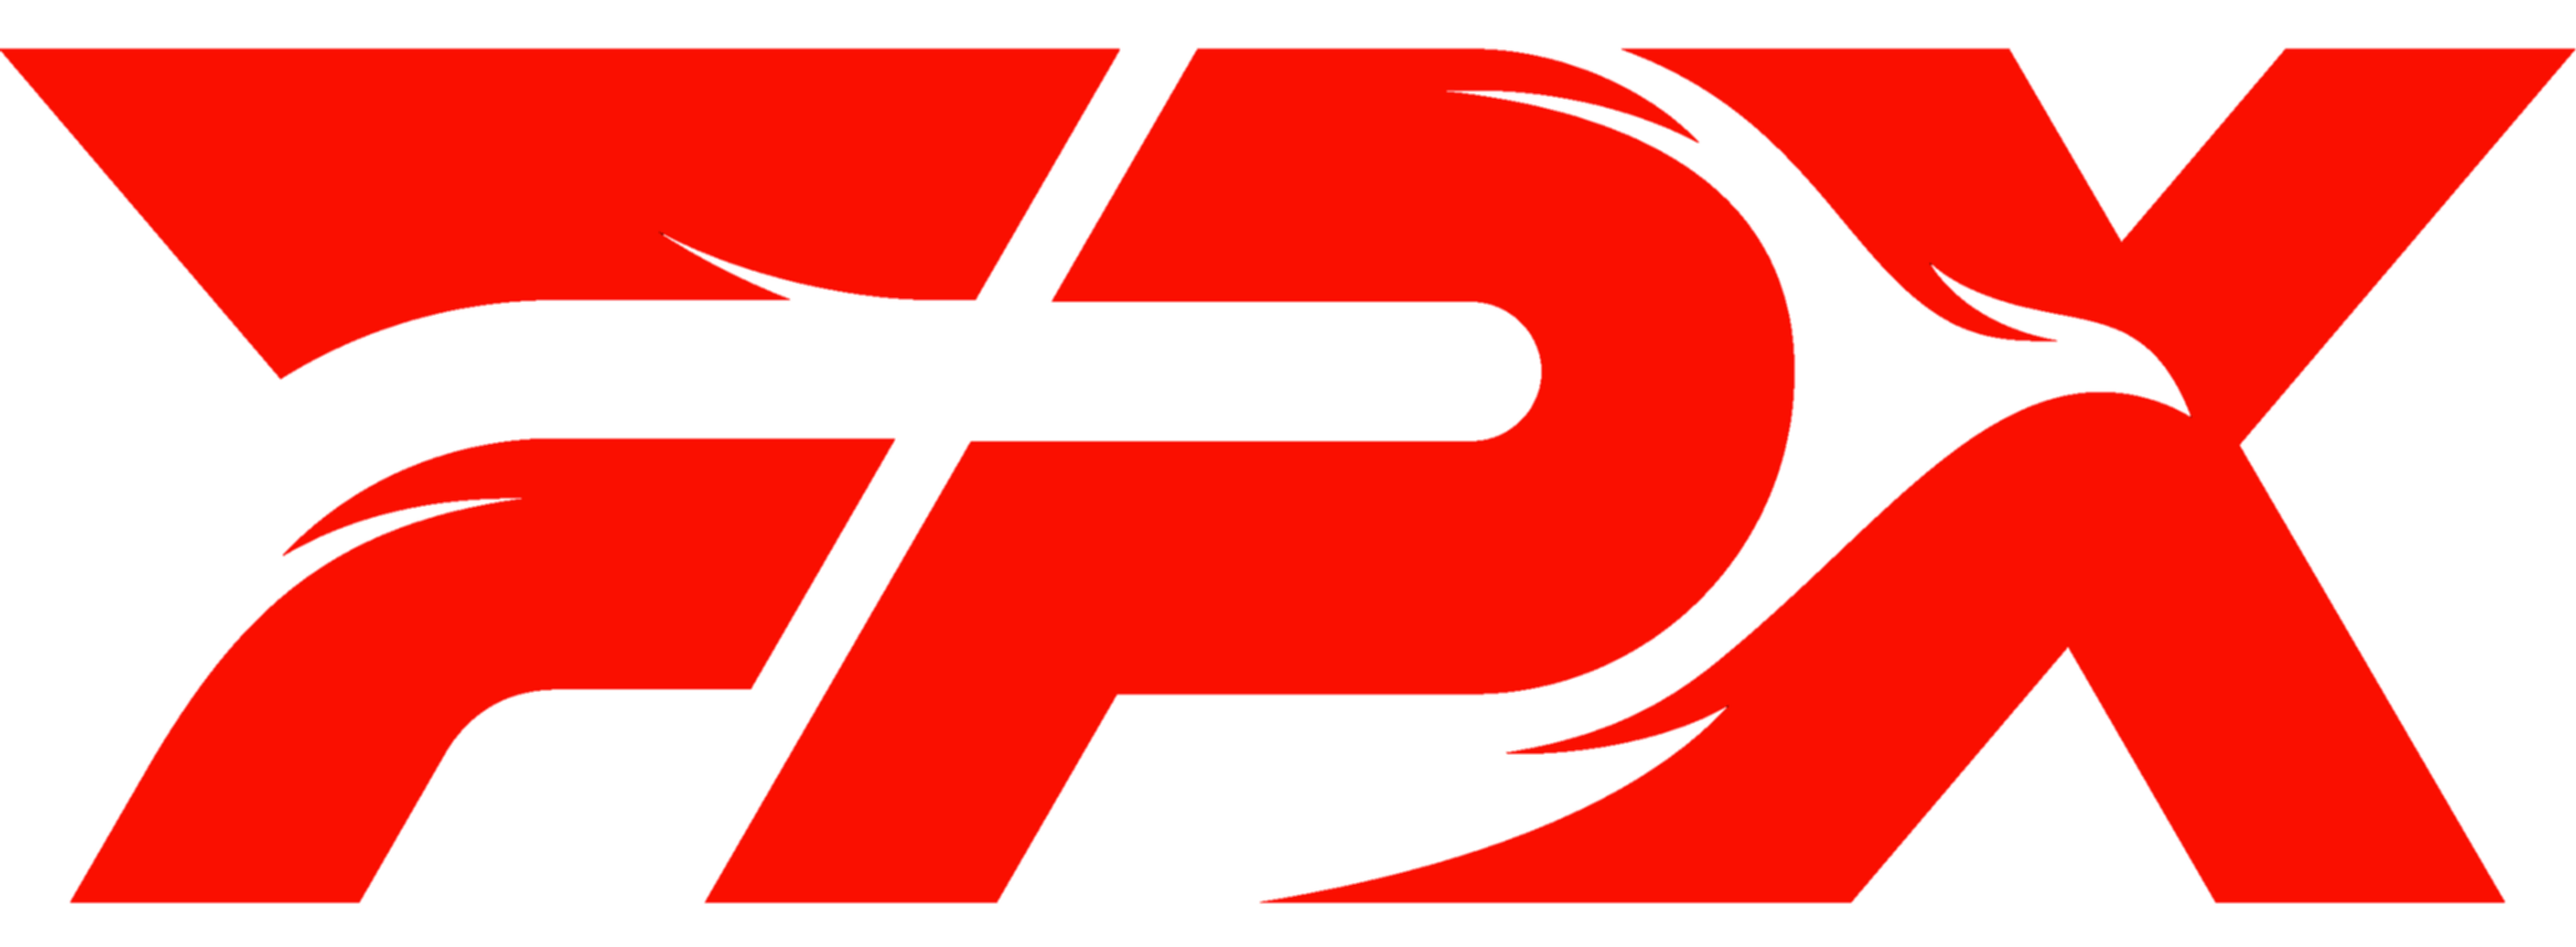 파일:FPX_logo_2021.png